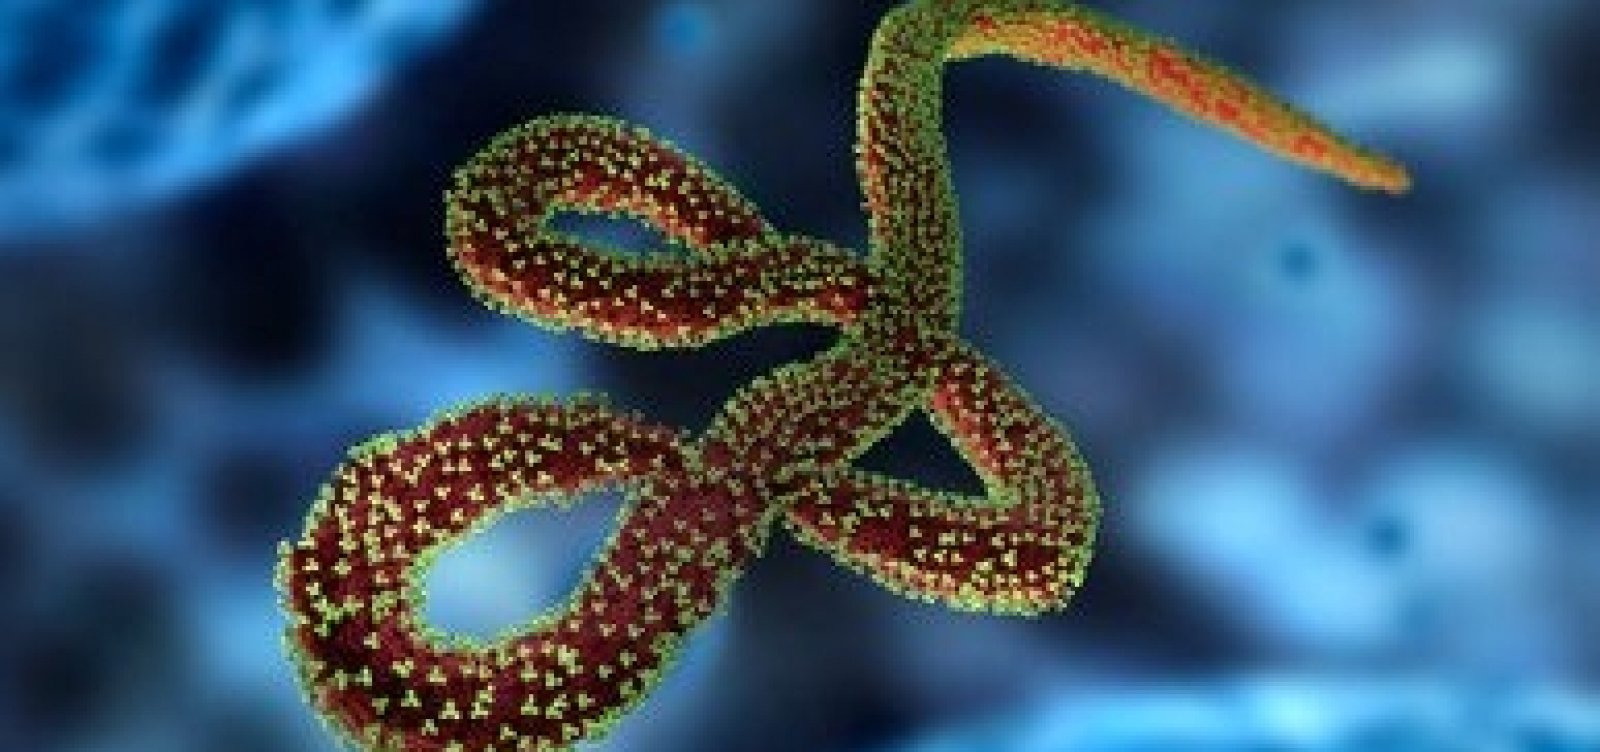 [Novo caso do vírus ebola mata uma pessoa no Congo]